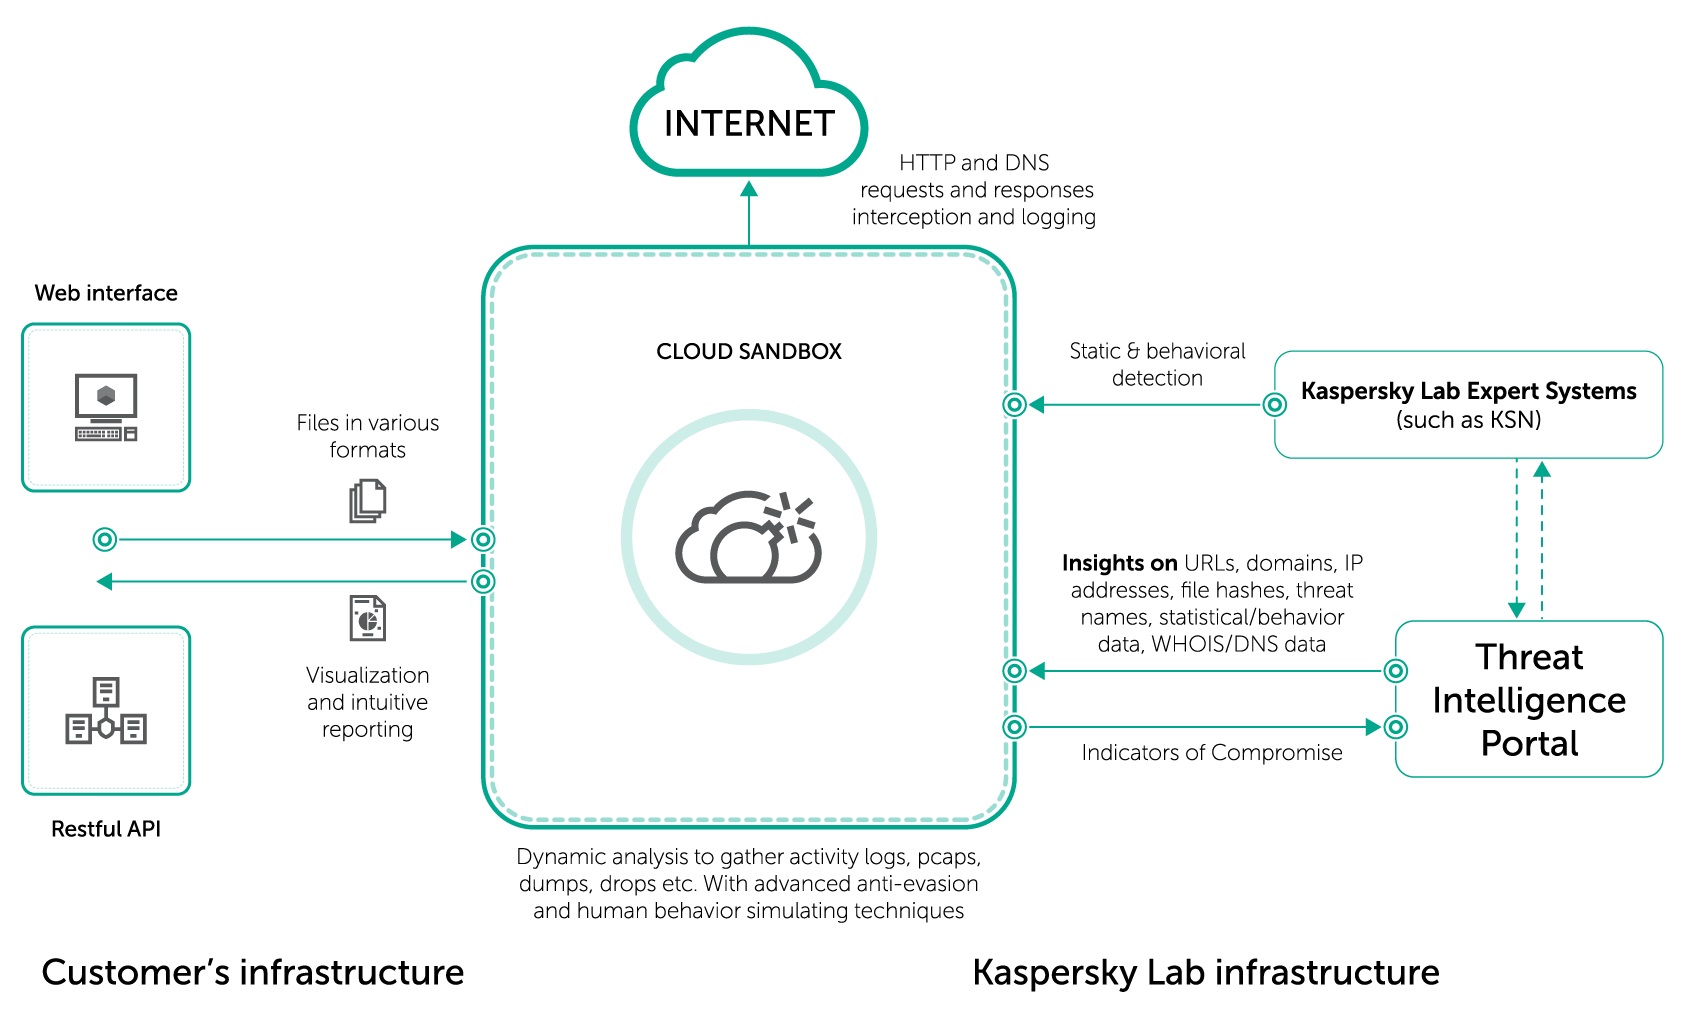 Služba Kaspersky Cloud Sandbox pomôže firmám zlepšiť detekciu a odstránenie zložitých bezpečnostných problémov. Služba umožňuje zničiť podozrivé súbory vo virtuálnom prostredí a zároveň získať všetky informácie o ich predchádzajúcich aktivitách.